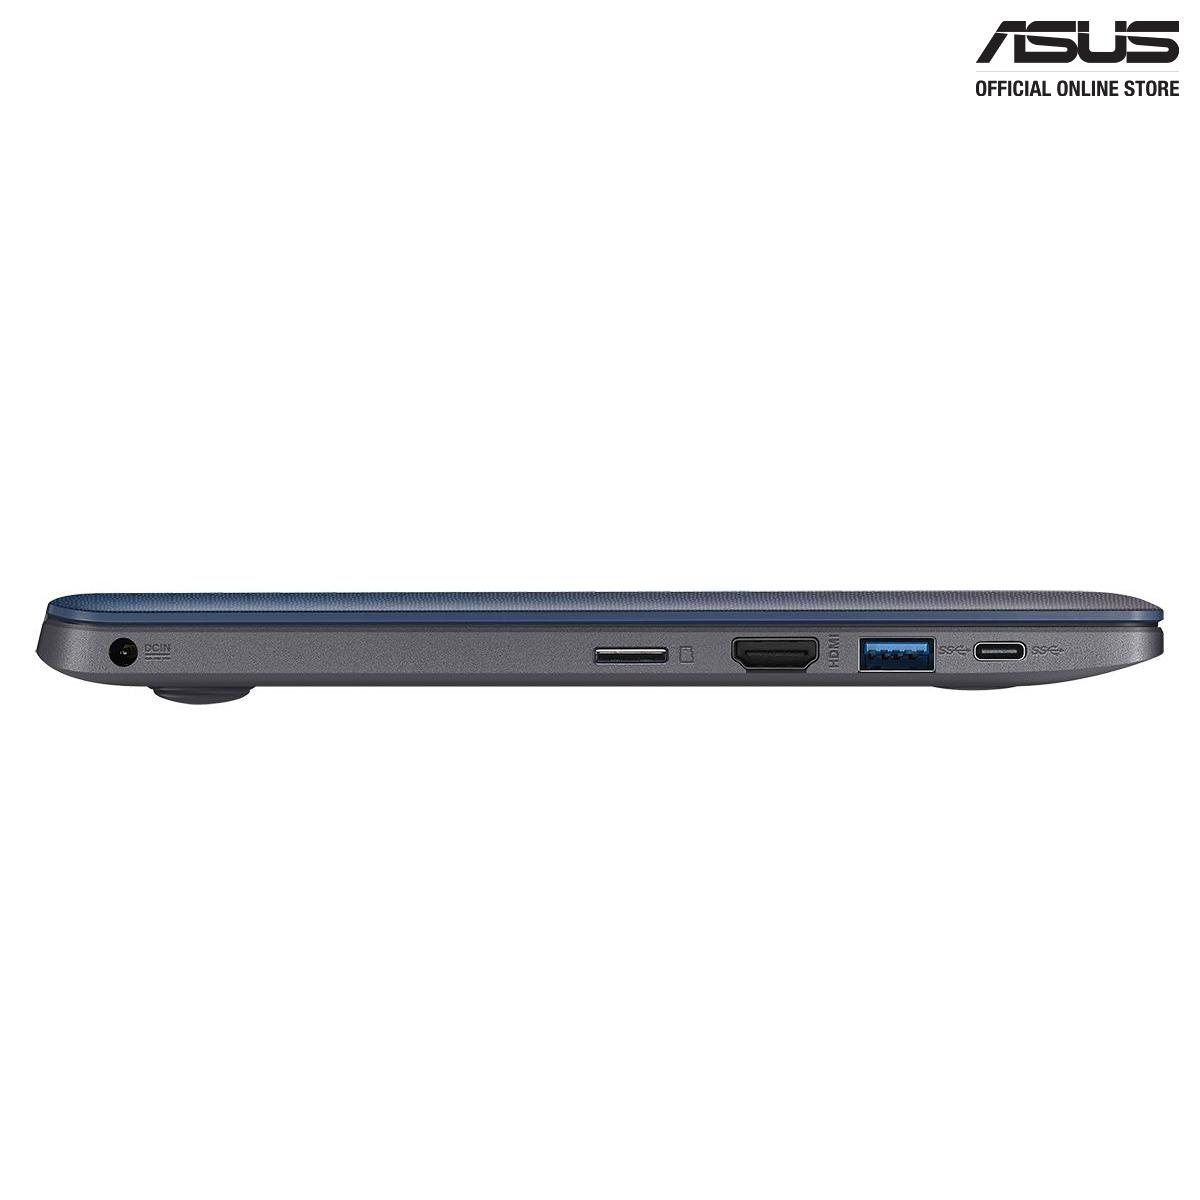 Asus VivoBook E203NA-FD107TS (Grey)